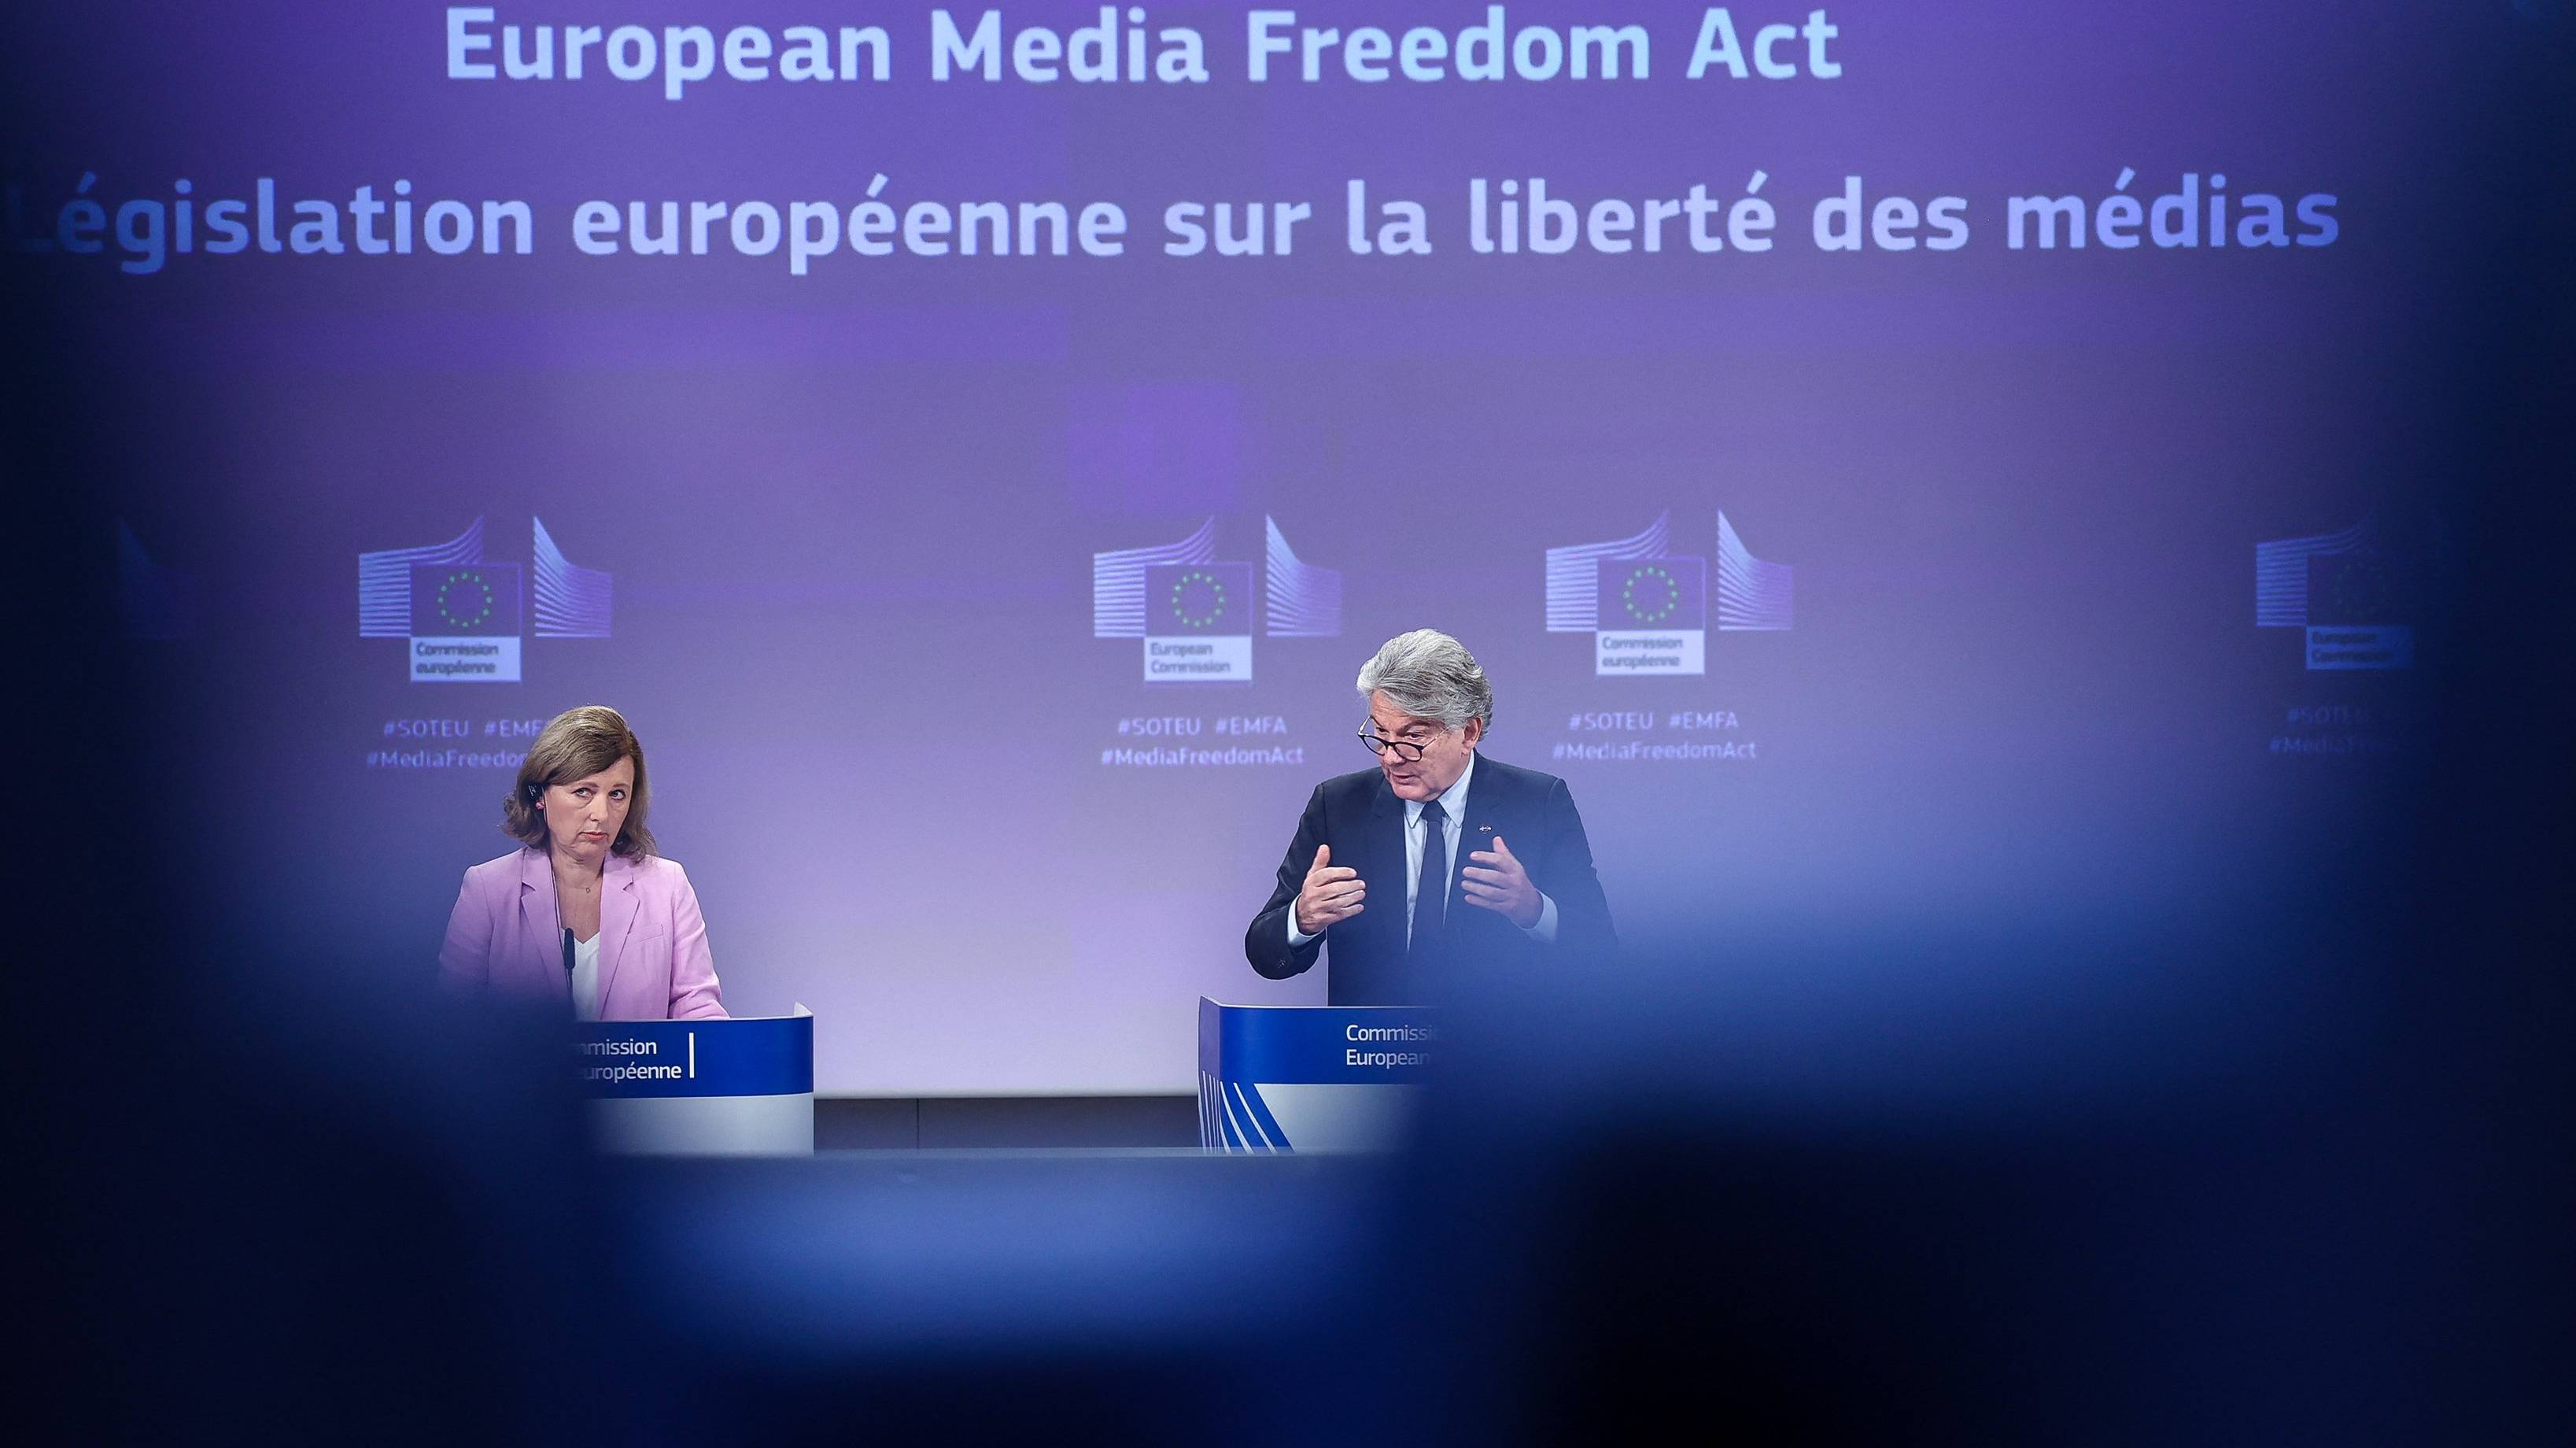 Dwoje polityków i napis na niebieskiej tablicy po angielsku i francusku (Europejski Akt o Wolności Mediów)